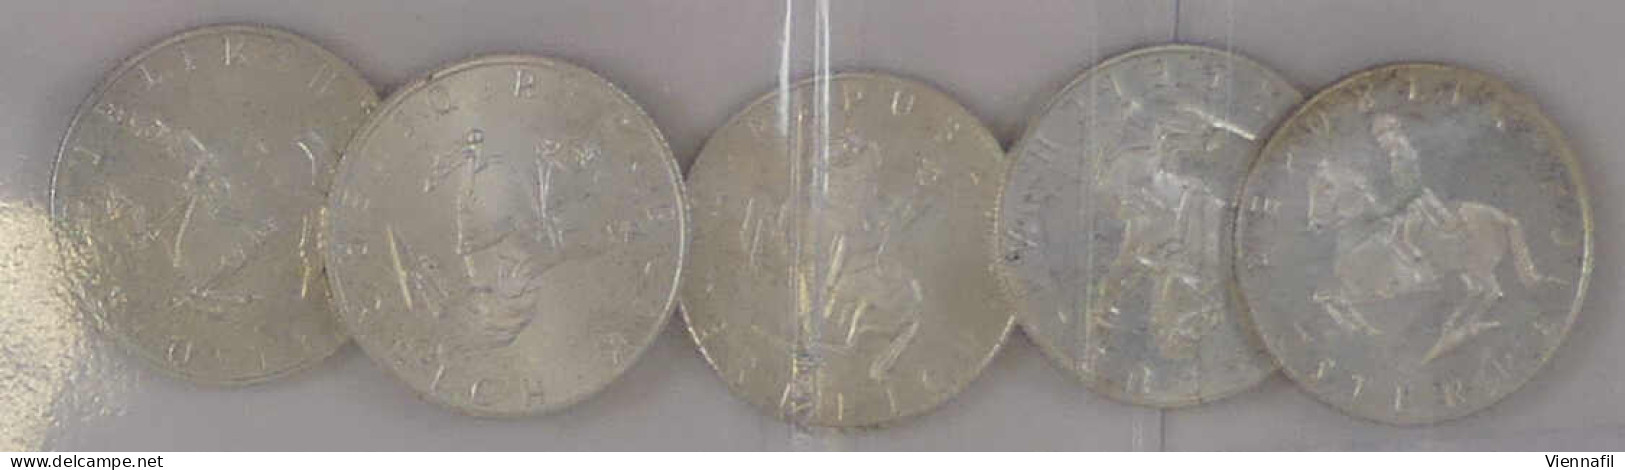 5 Schilling 1961/68, Silbermünzen Der Jahre 1961, 1964/66 Und 1968, Insgesamt 16,64 Gr. Fein, PP - Oesterreich